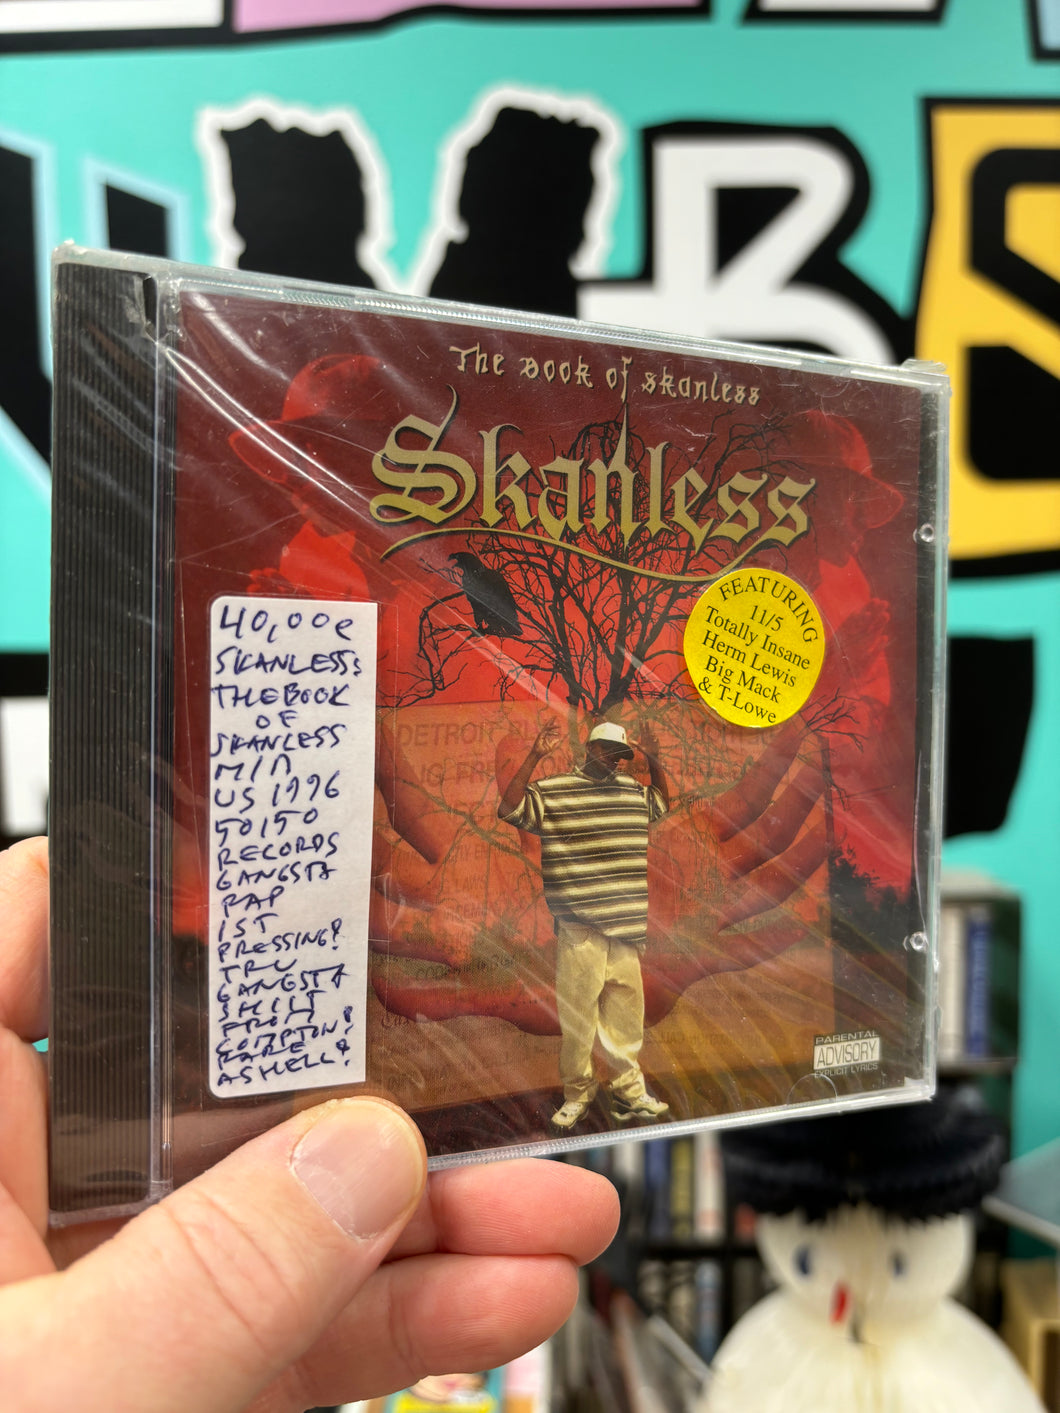 Skanless: The Book Of Skanless, CD, 1st pressing, SEALED!, US 1996